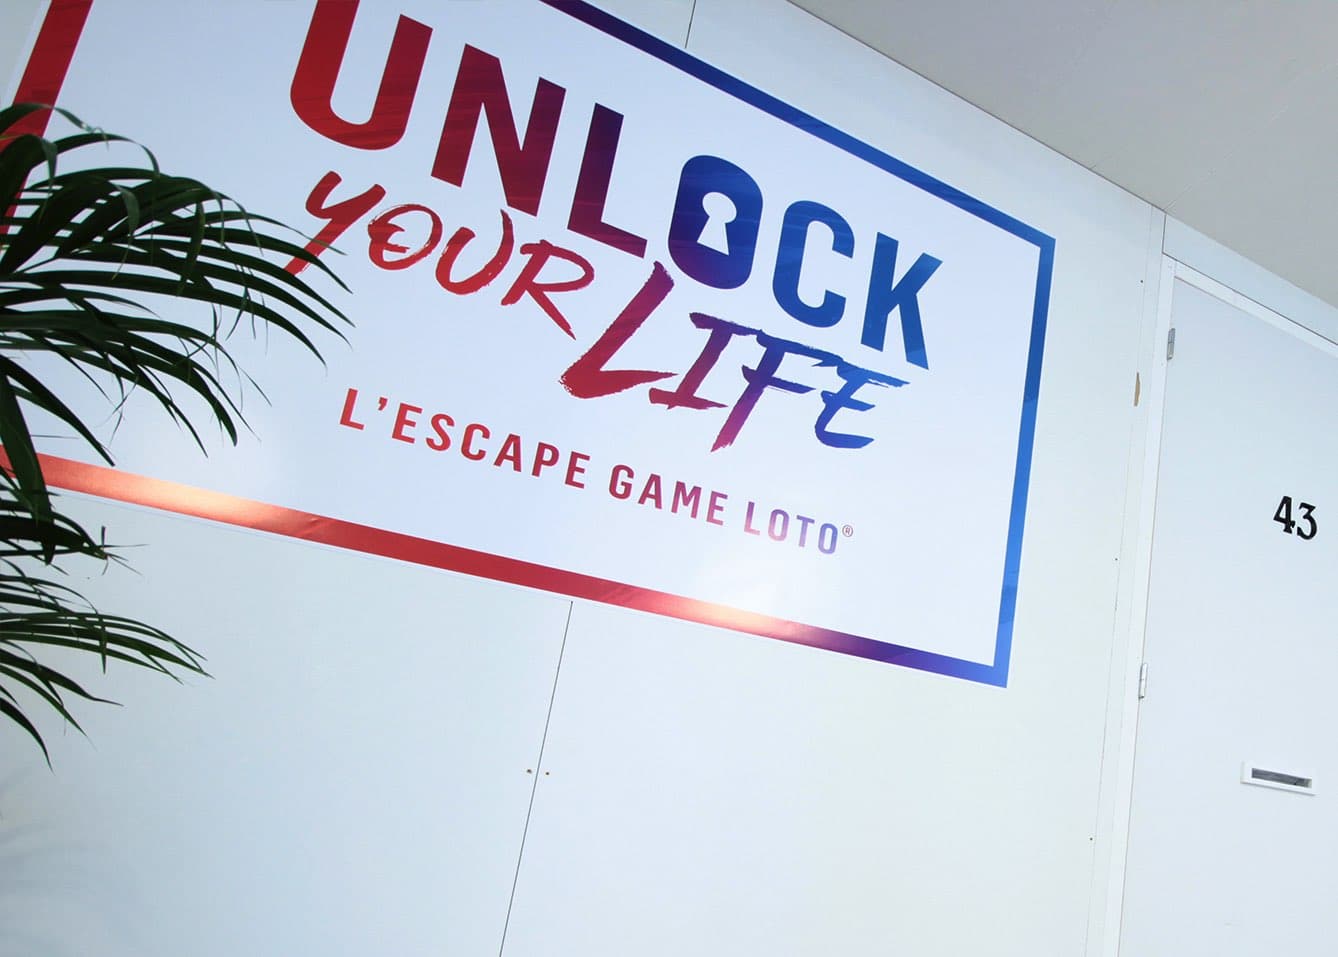 Unlock your life – l’Escape Game Loto